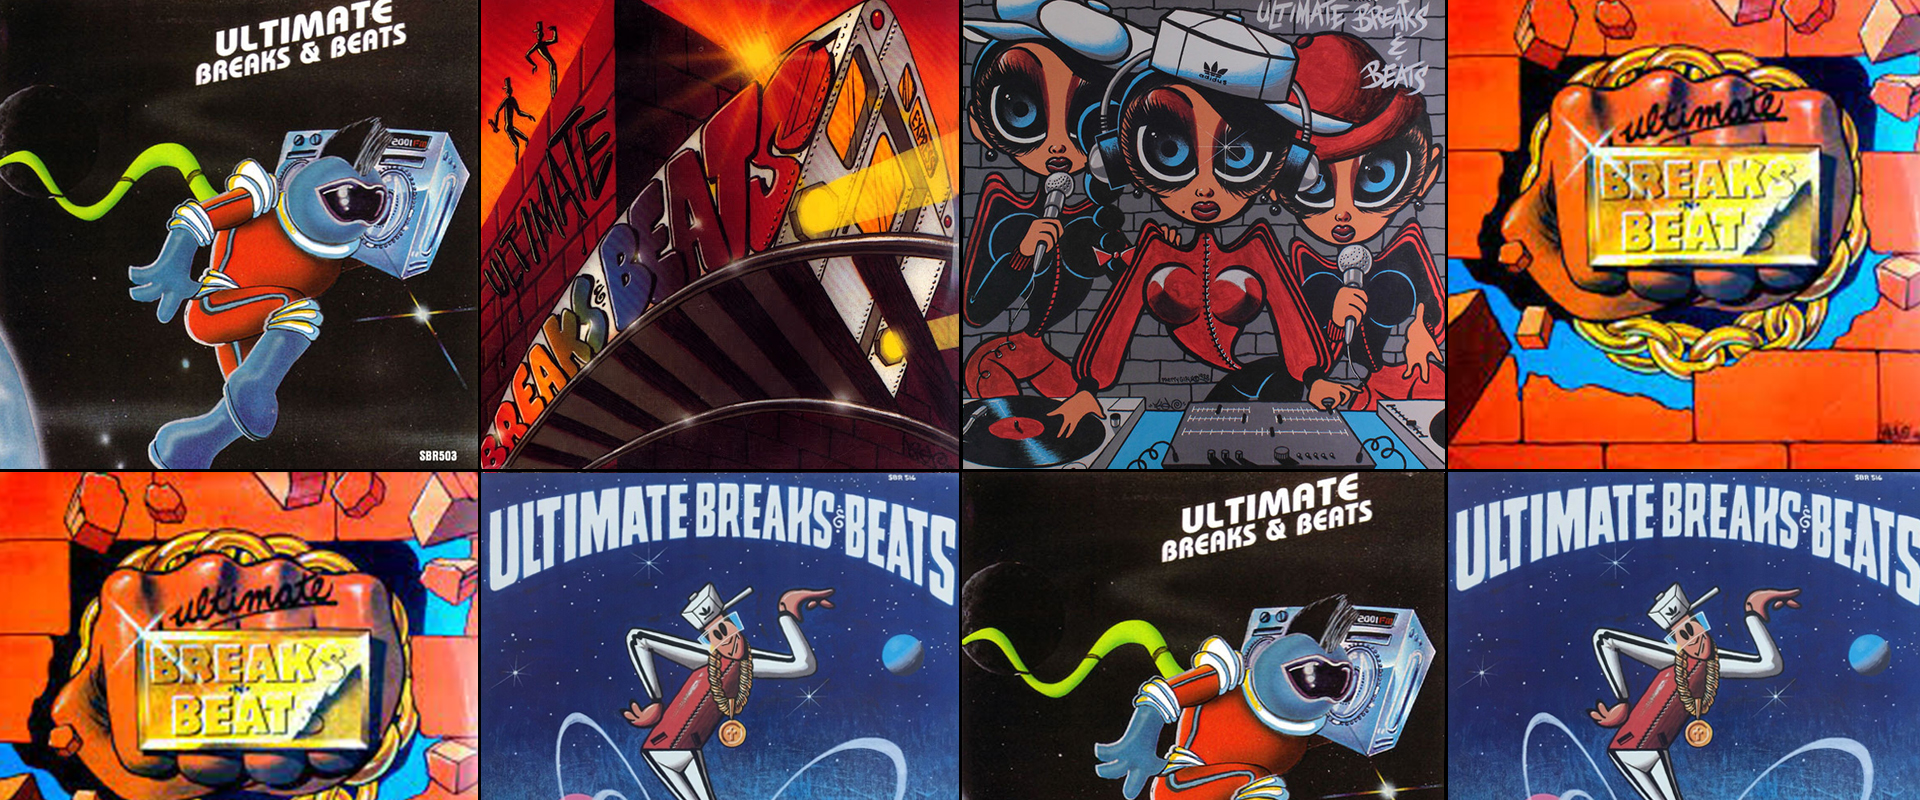 Ultimate Breaks & Beats SBR-509 - 洋楽